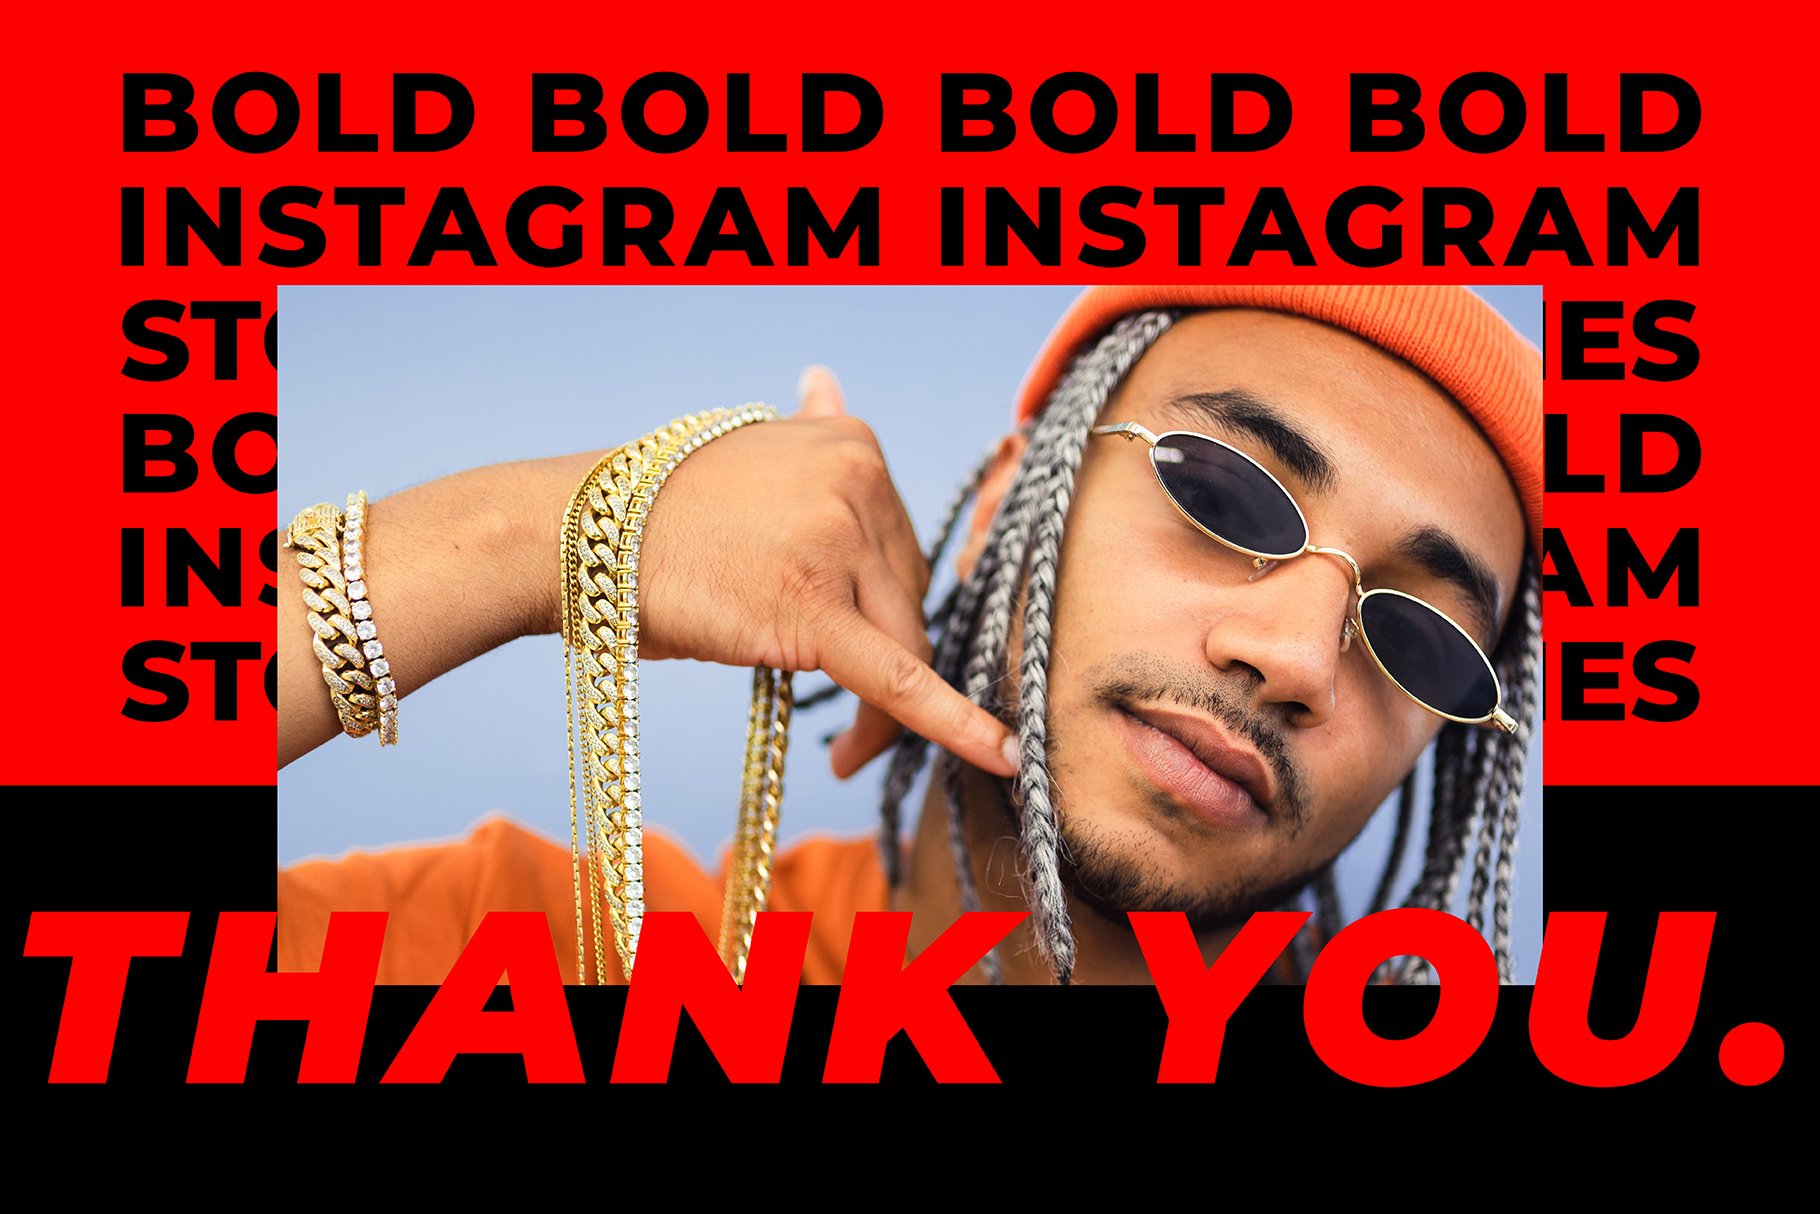 BOLD-潮流嘻哈复古高级Instagram竖屏错版大文字故事动画设计PSD模板 设计素材 第3张